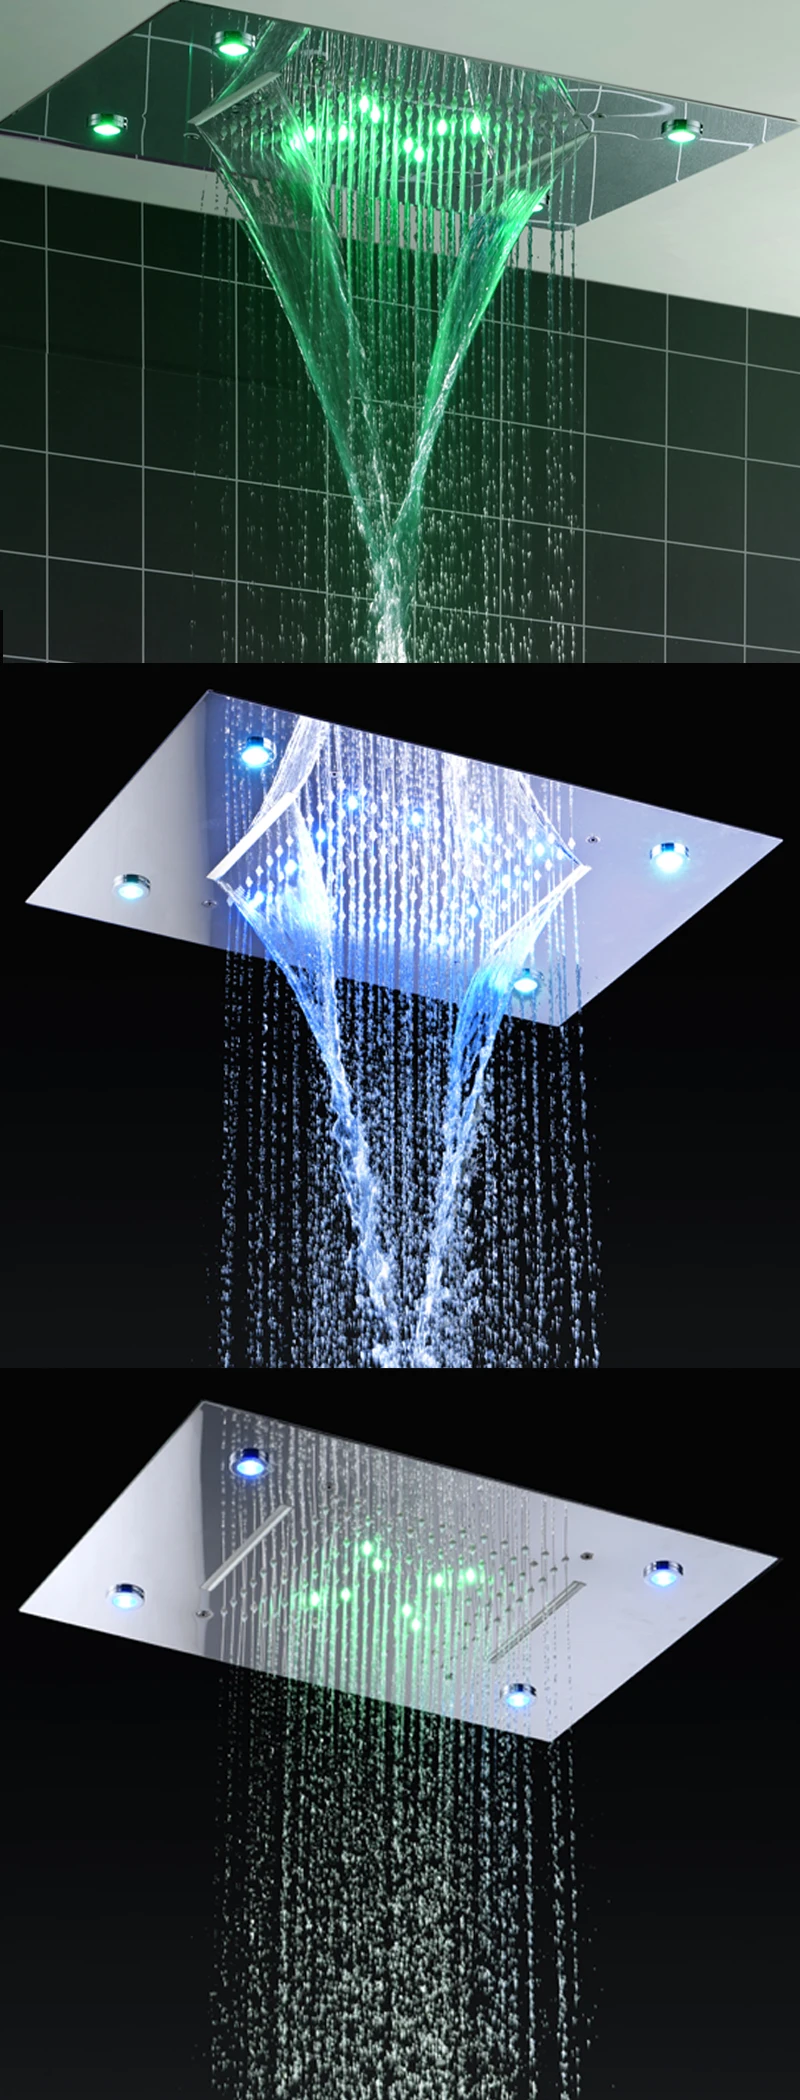 Ванная комната Conea светодиодный смесители для душа Панель горячей и холодной водой Светодиодный потолочный Showerhead Водопад осадков Ванна